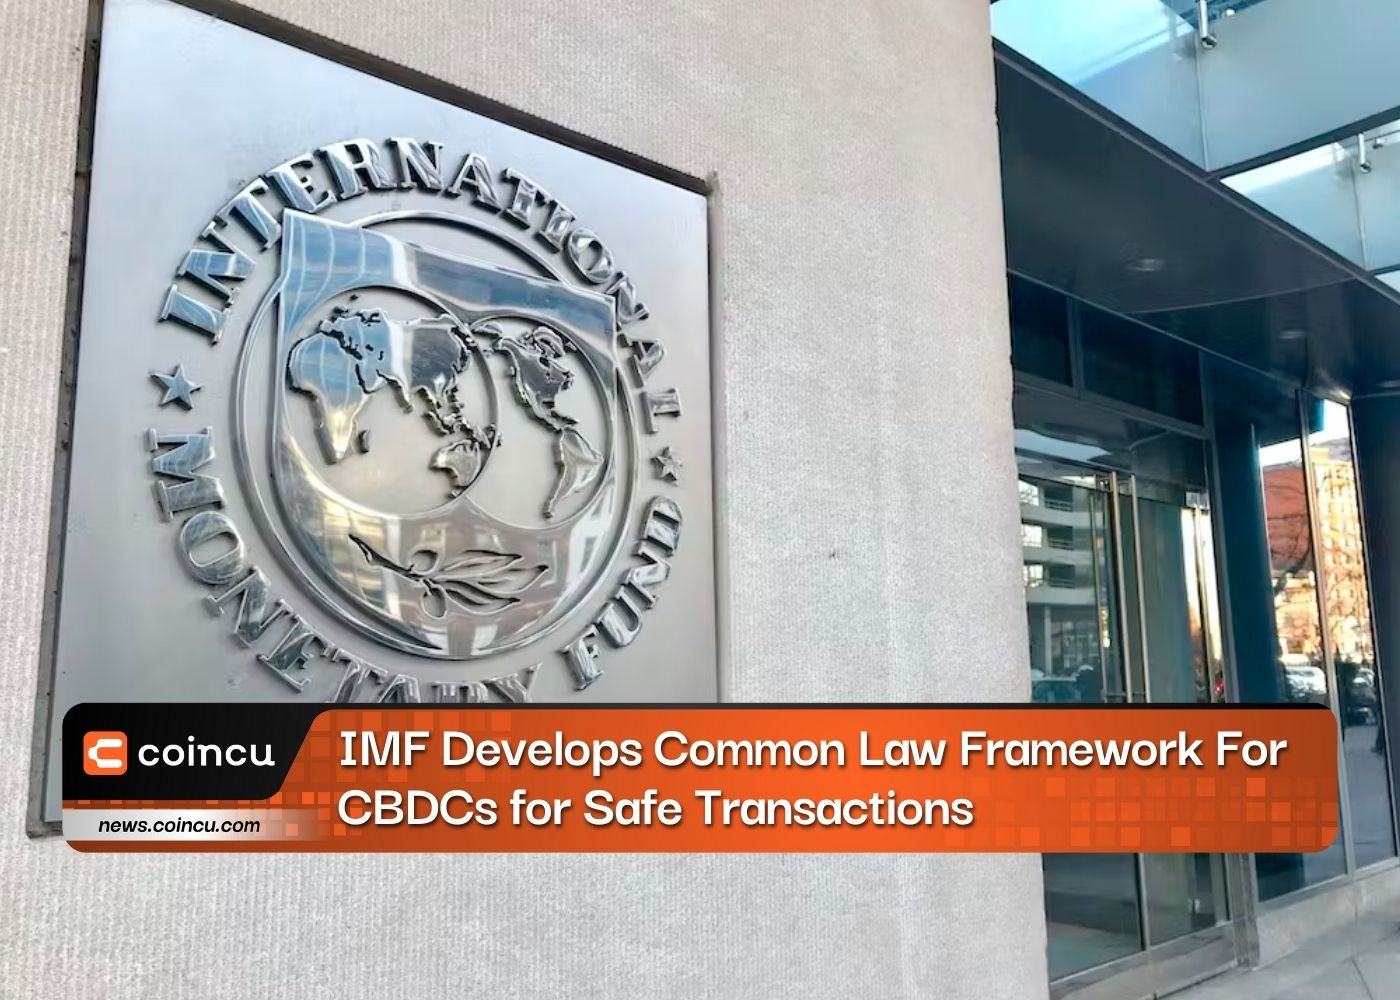 Le FMI développe un cadre de droit commun pour les CBDC pour des transactions sûres